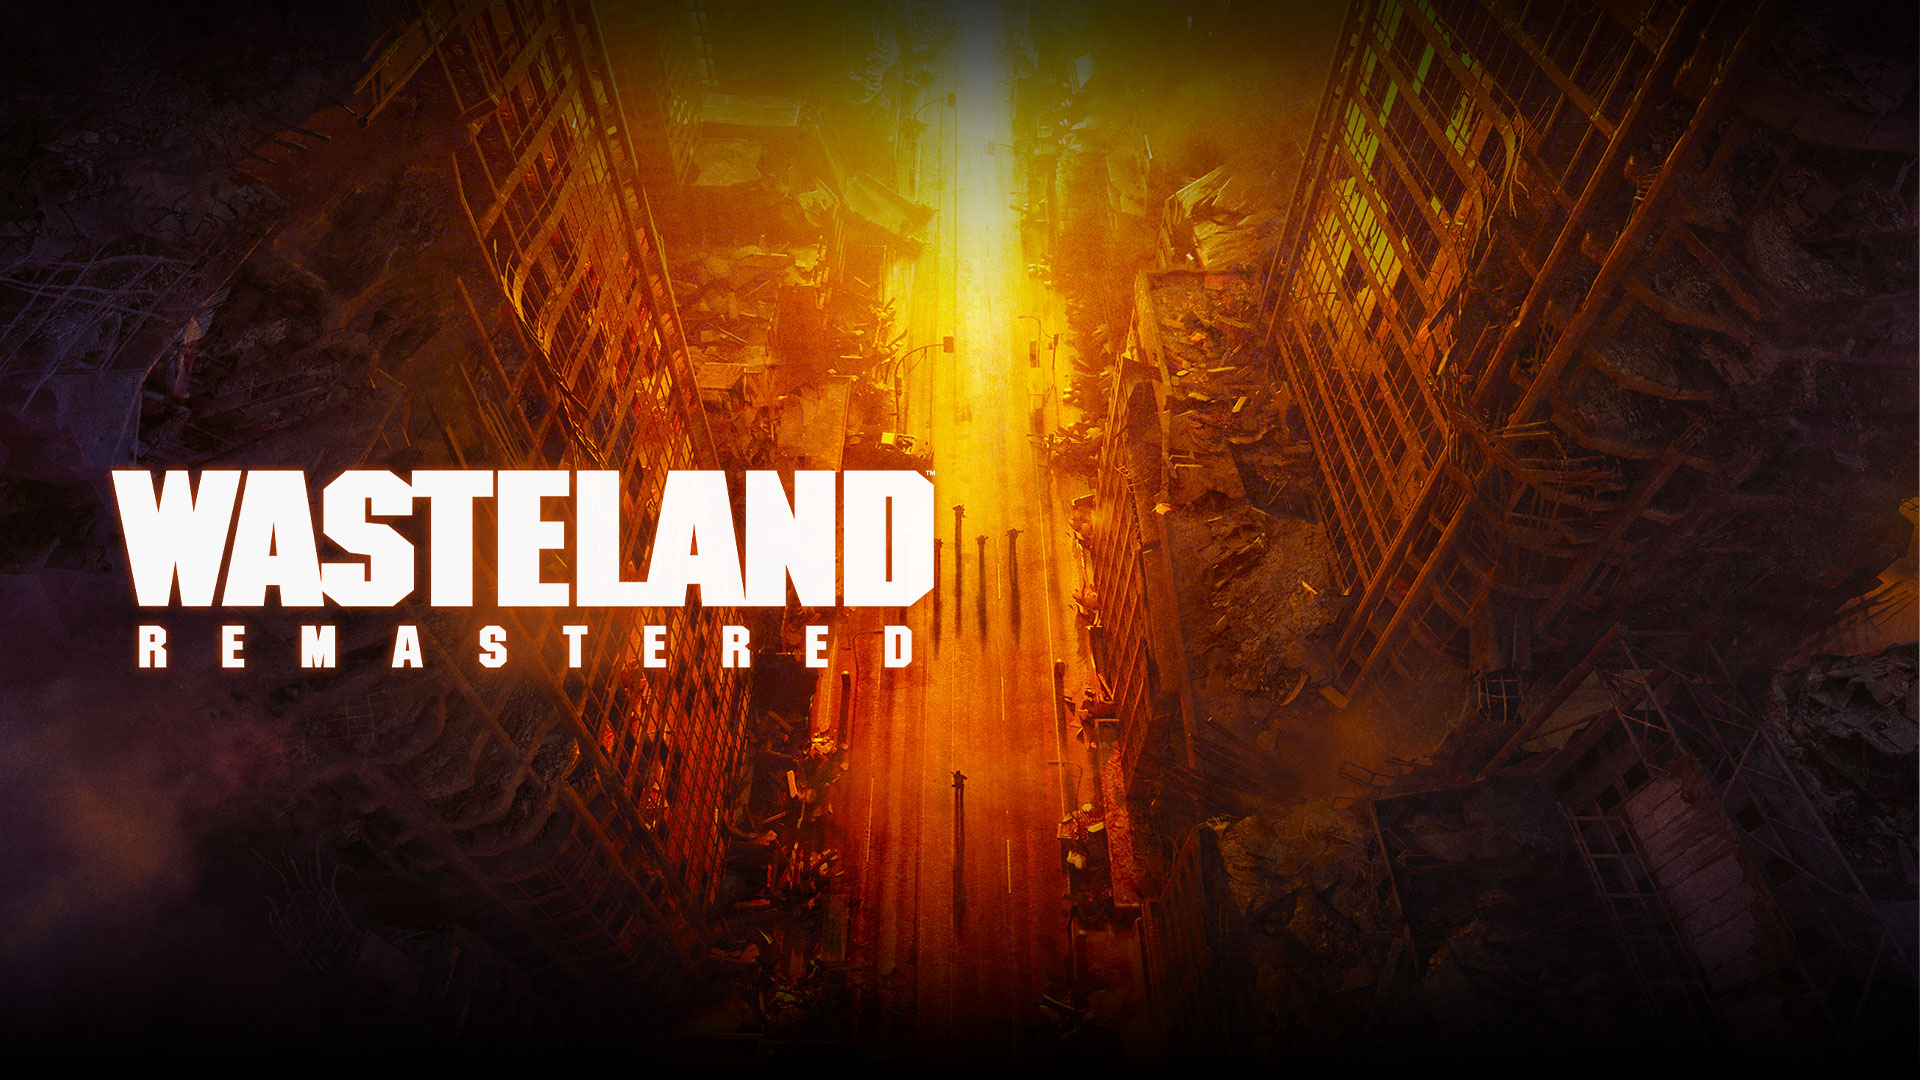 Wasteland Remastered, ødelagte bygninger og mennesker på gaden set oppefra i gule, orange og røde nuancer